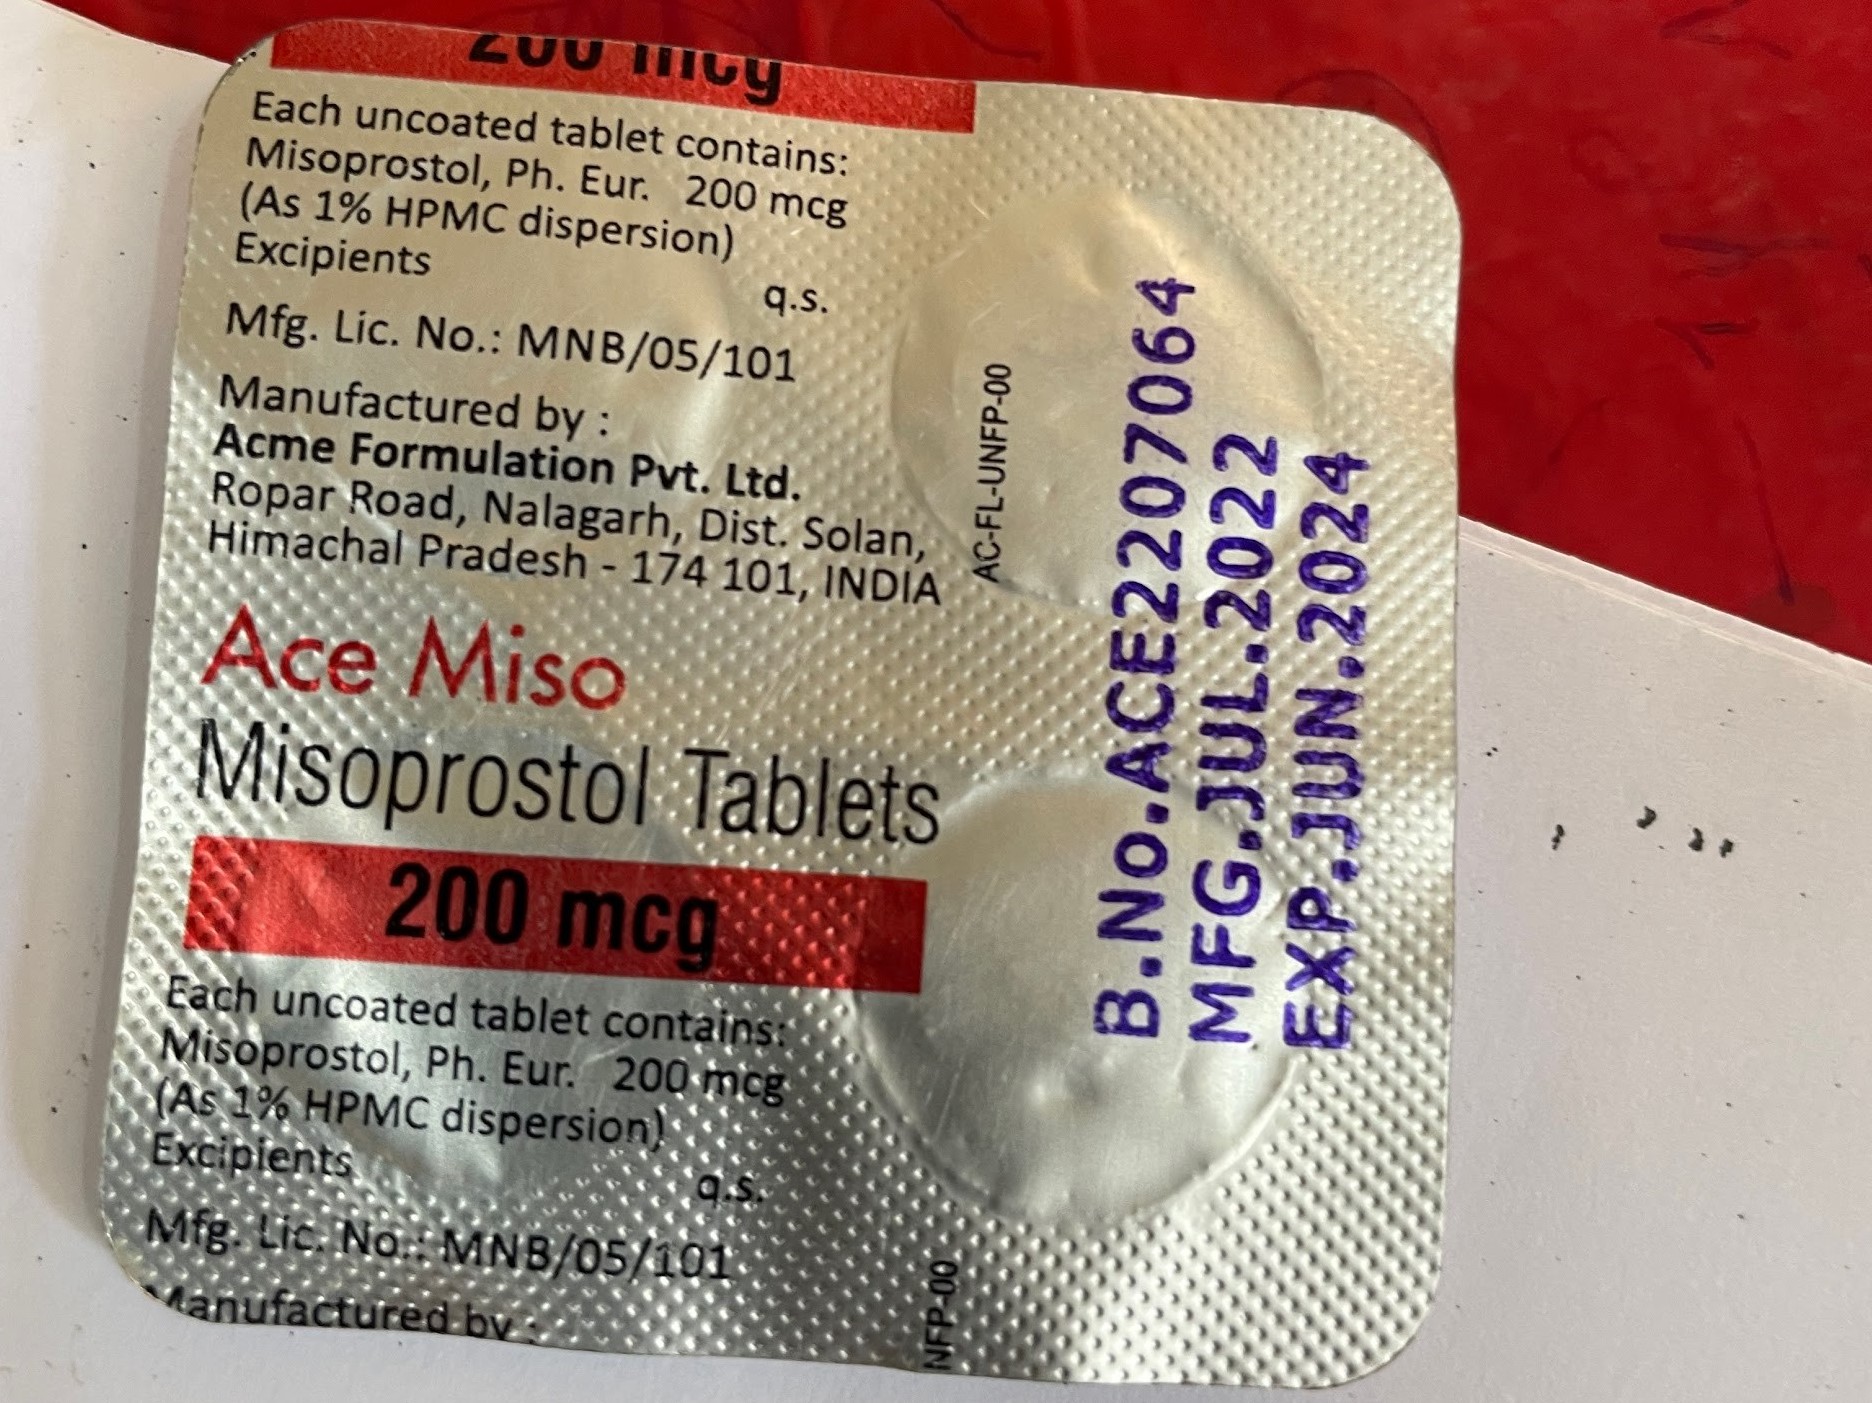 Misoprostol tablet